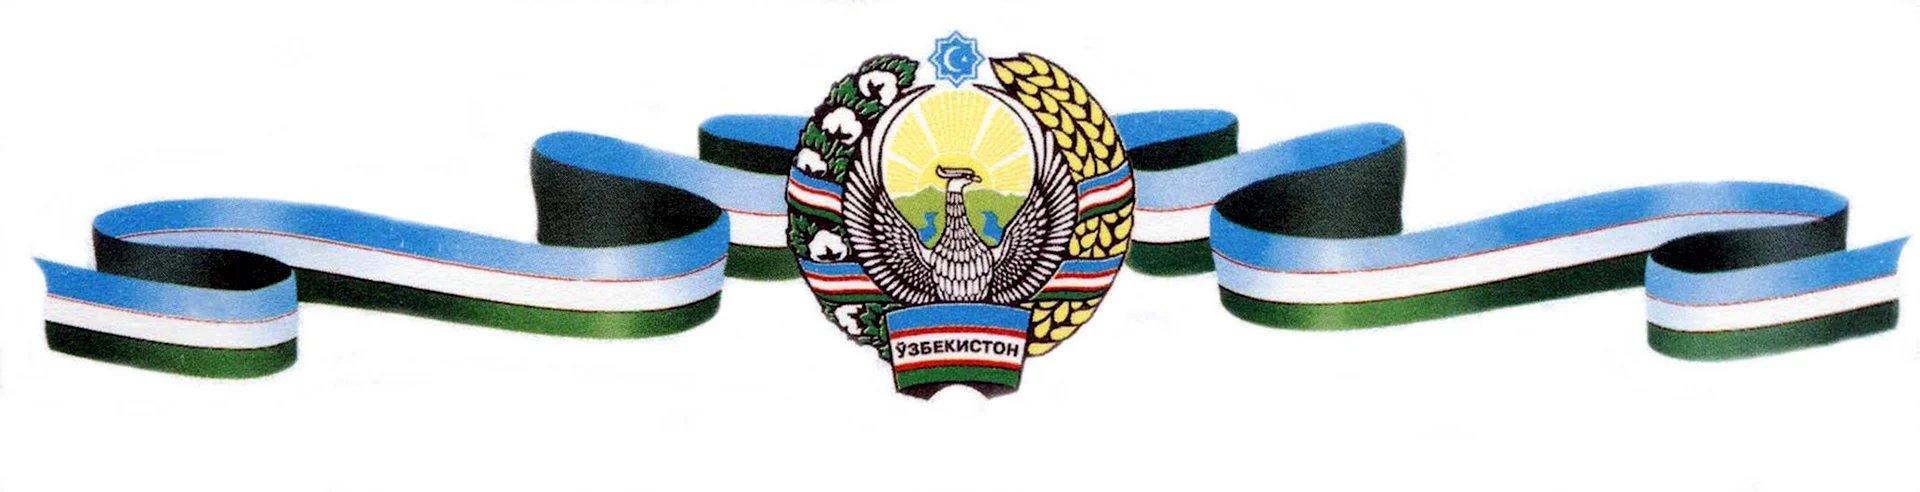 Герб и флаг Узбекистана